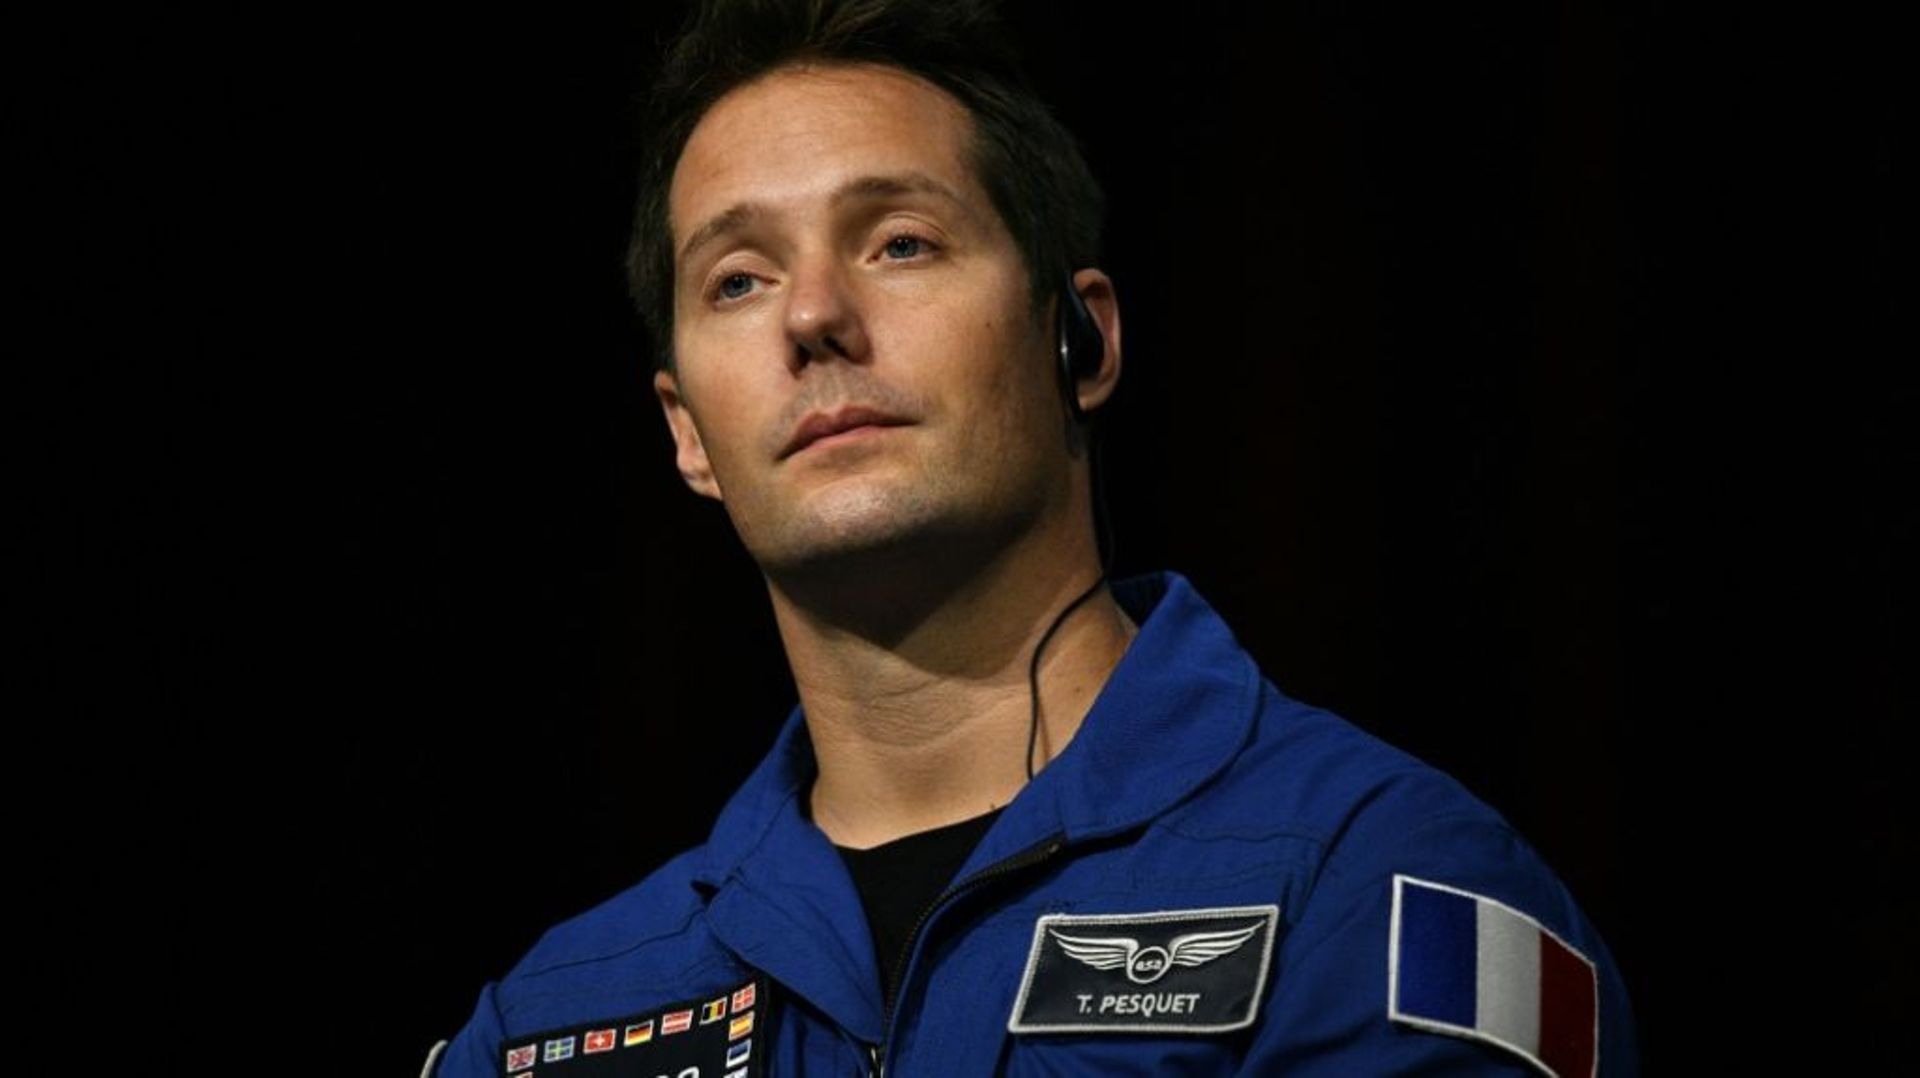 L'astronaute français Thomas Pesquet lors d'une conférence de presse en septembre 2019 à Tokyo